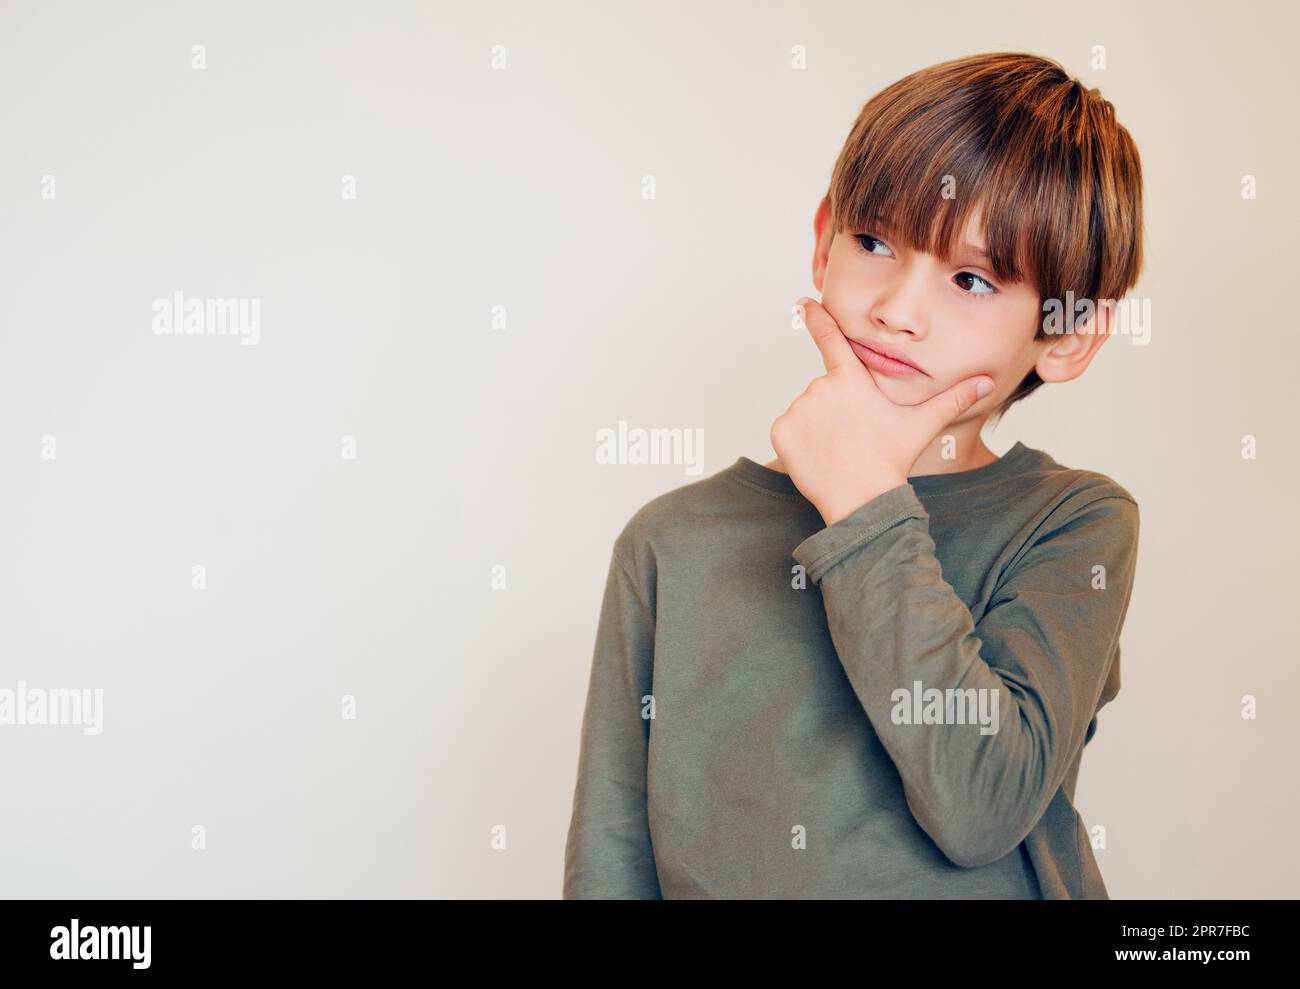 Des ombres qui se jettent dans les yeux. Studio photo d'un petit garçon mignon perdu dans ses pensées en posant contre un mur. Banque D'Images